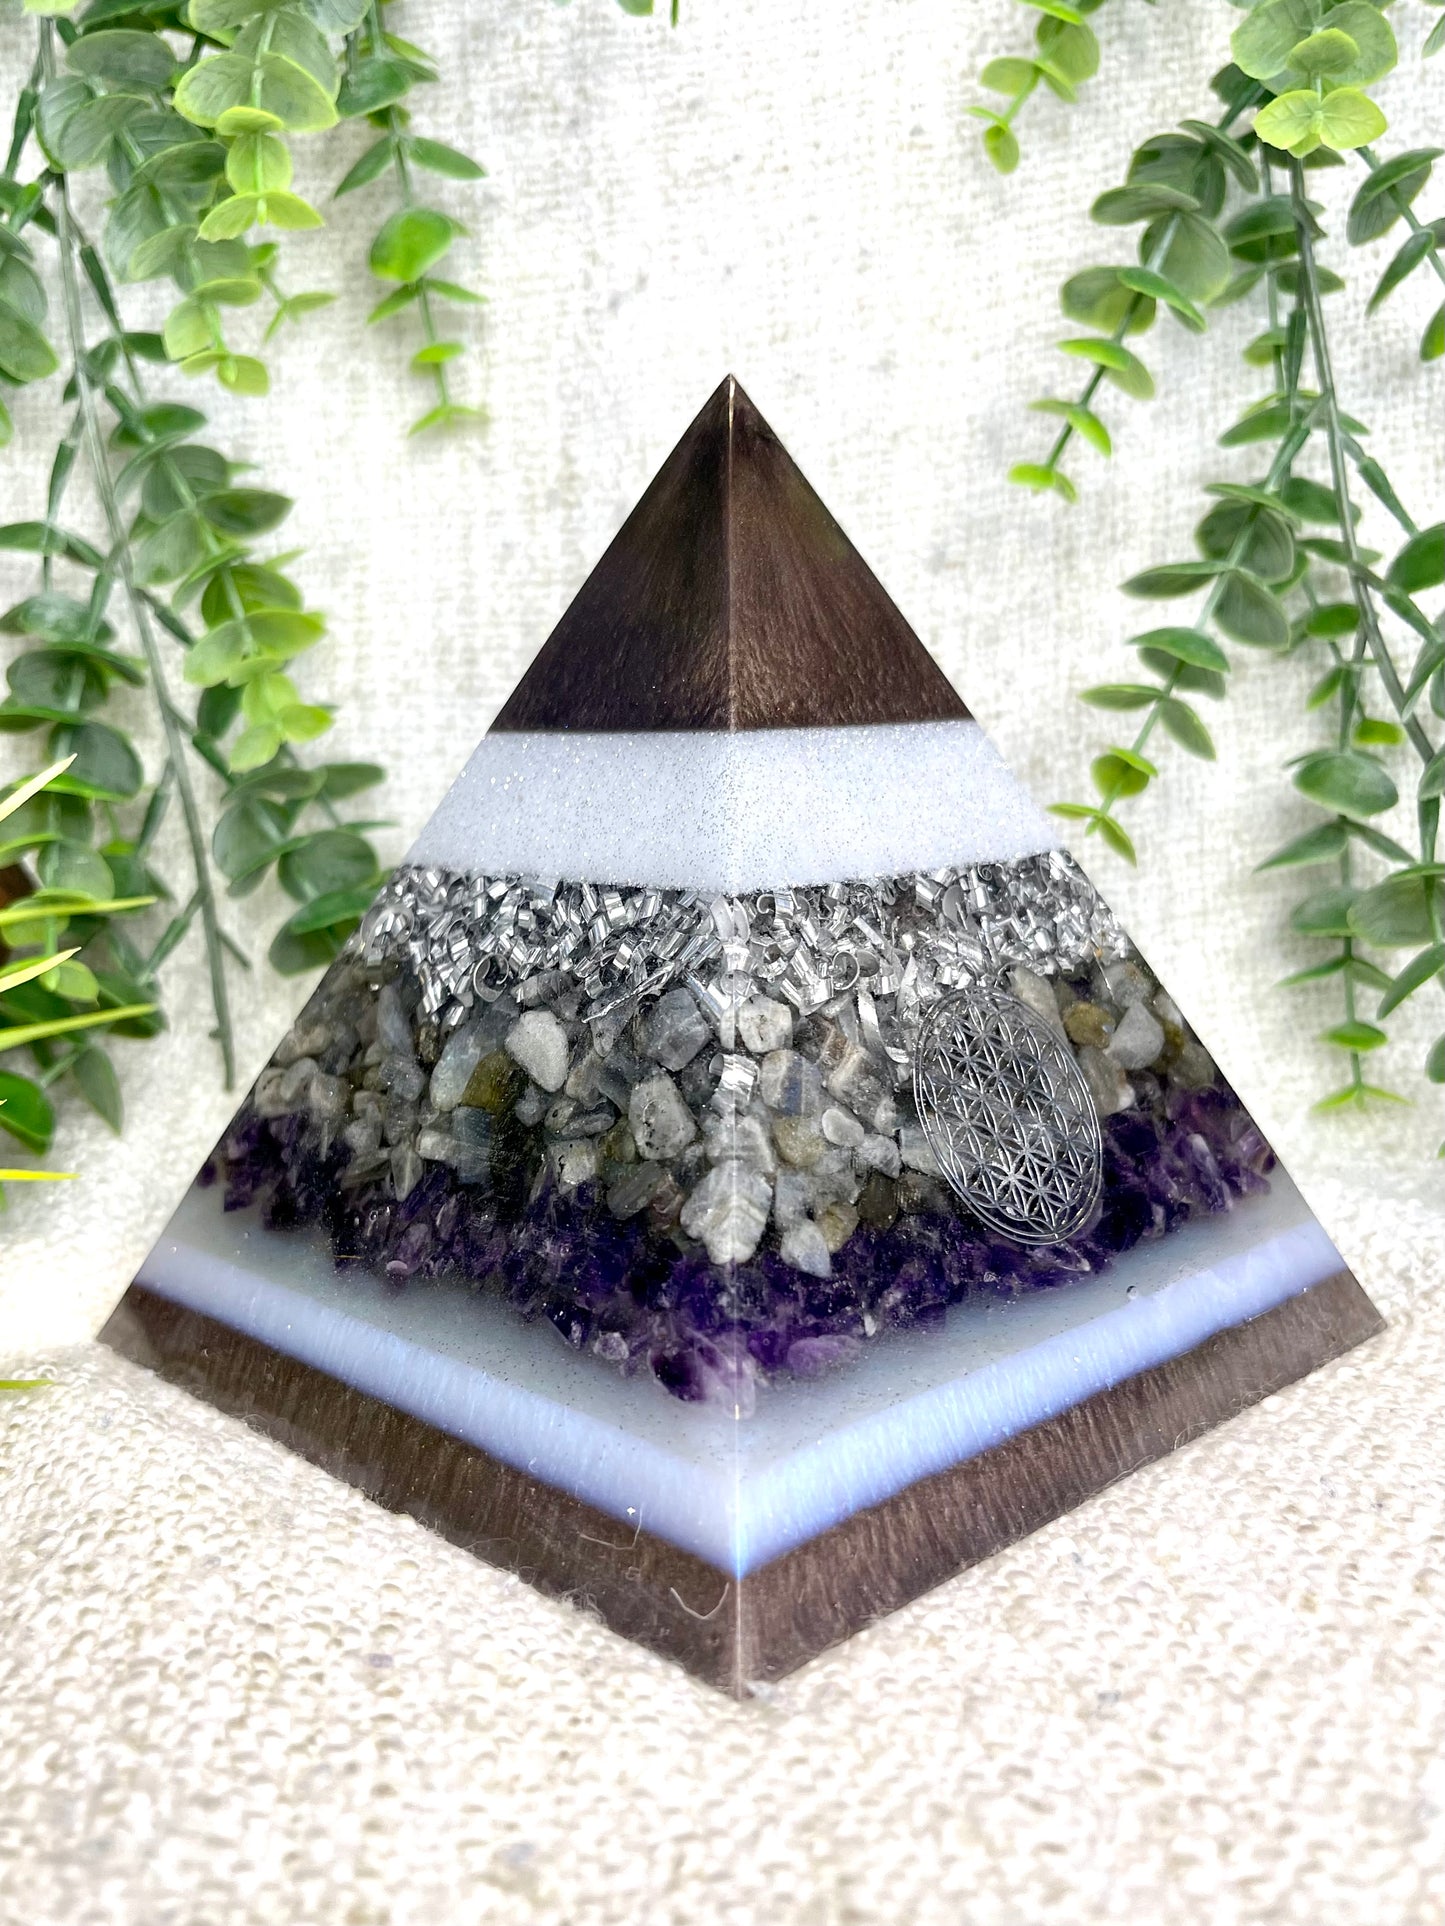 ANDREA - Orgonite Pyramid - EMF Protector - Labradorite Quartz, Amethyst Crystals and Aluminum Metal